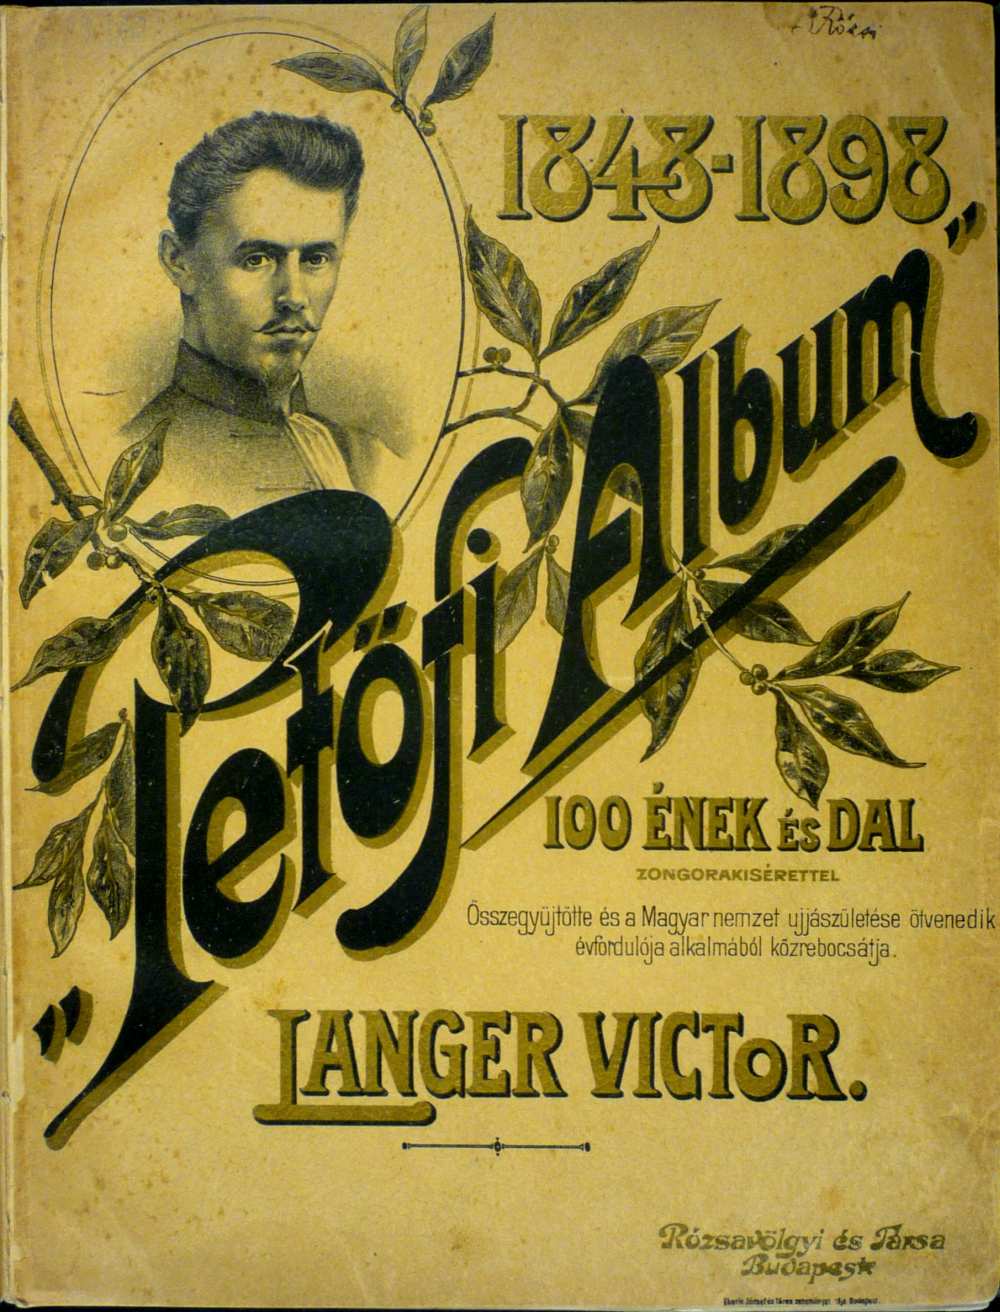 Langer Viktor (szerk.): 1848–1898 „Petőfi Album”, Budapest, Rózsavölgyi és Társa, 1898. Az album belső címoldala – Színháztörténeti és Zeneműtár, Z 43.360